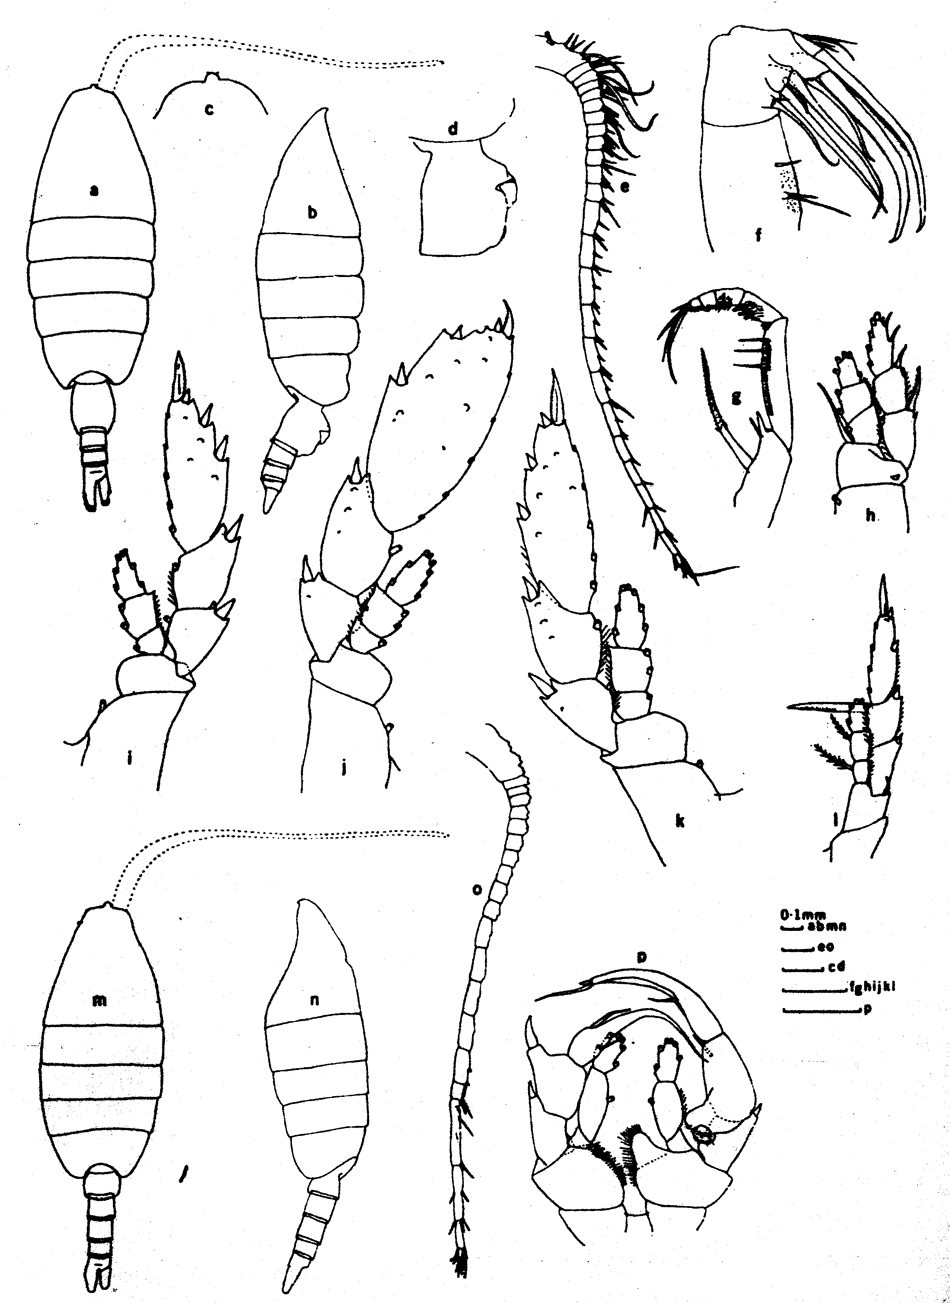 Espce Heterorhabdus caribbeanensis - Planche 4 de figures morphologiques